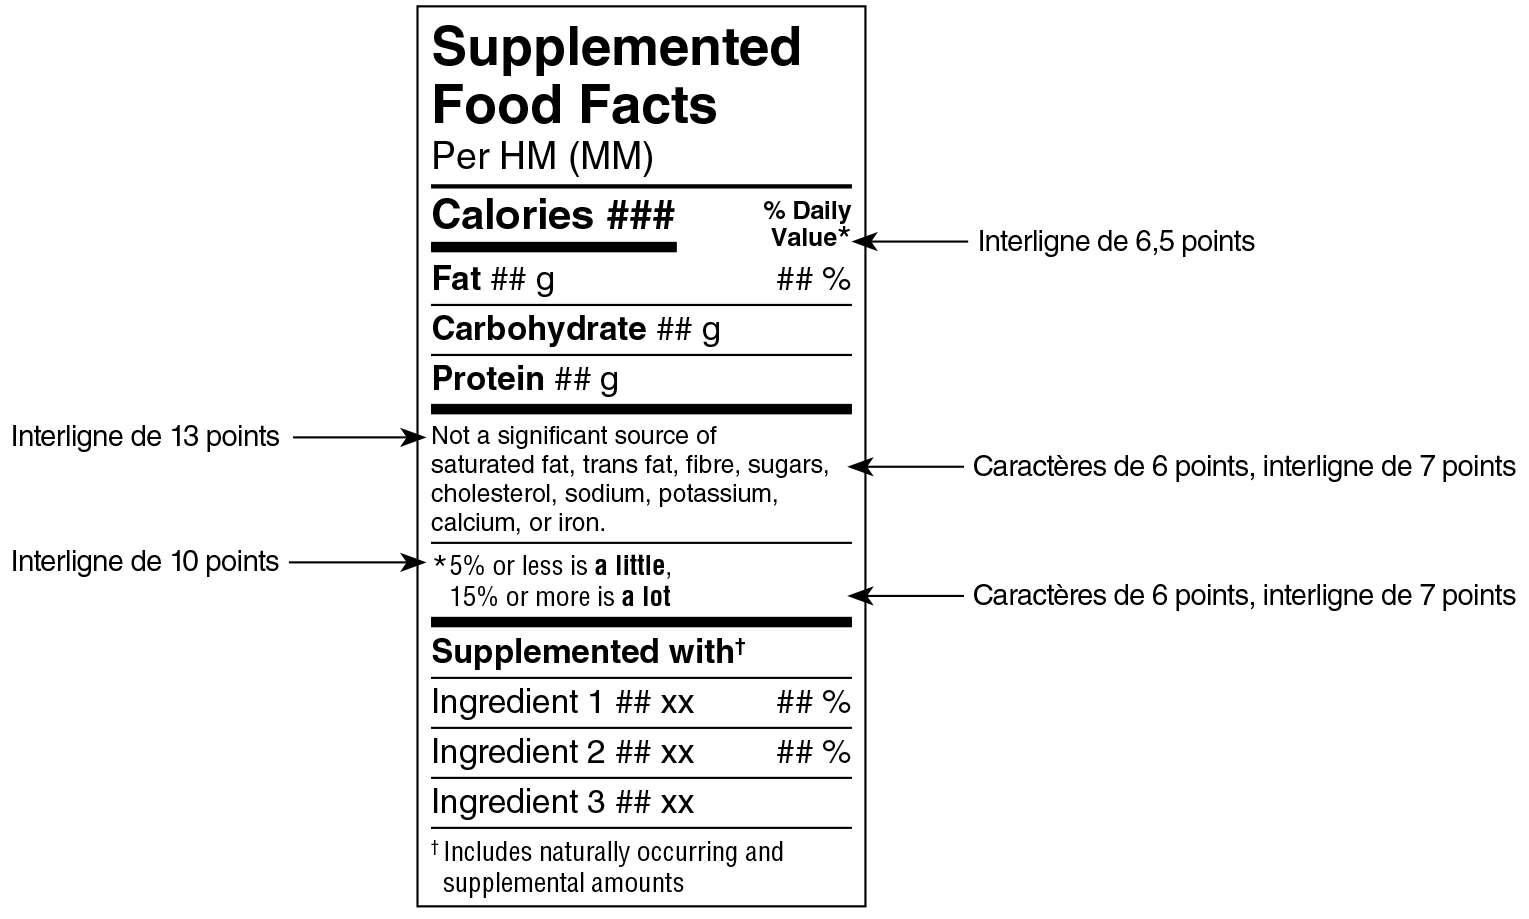 Modèle standard simplifié anglais du tableau des renseignements sur les aliments supplémentés avec indications. Version texte ci-dessous.